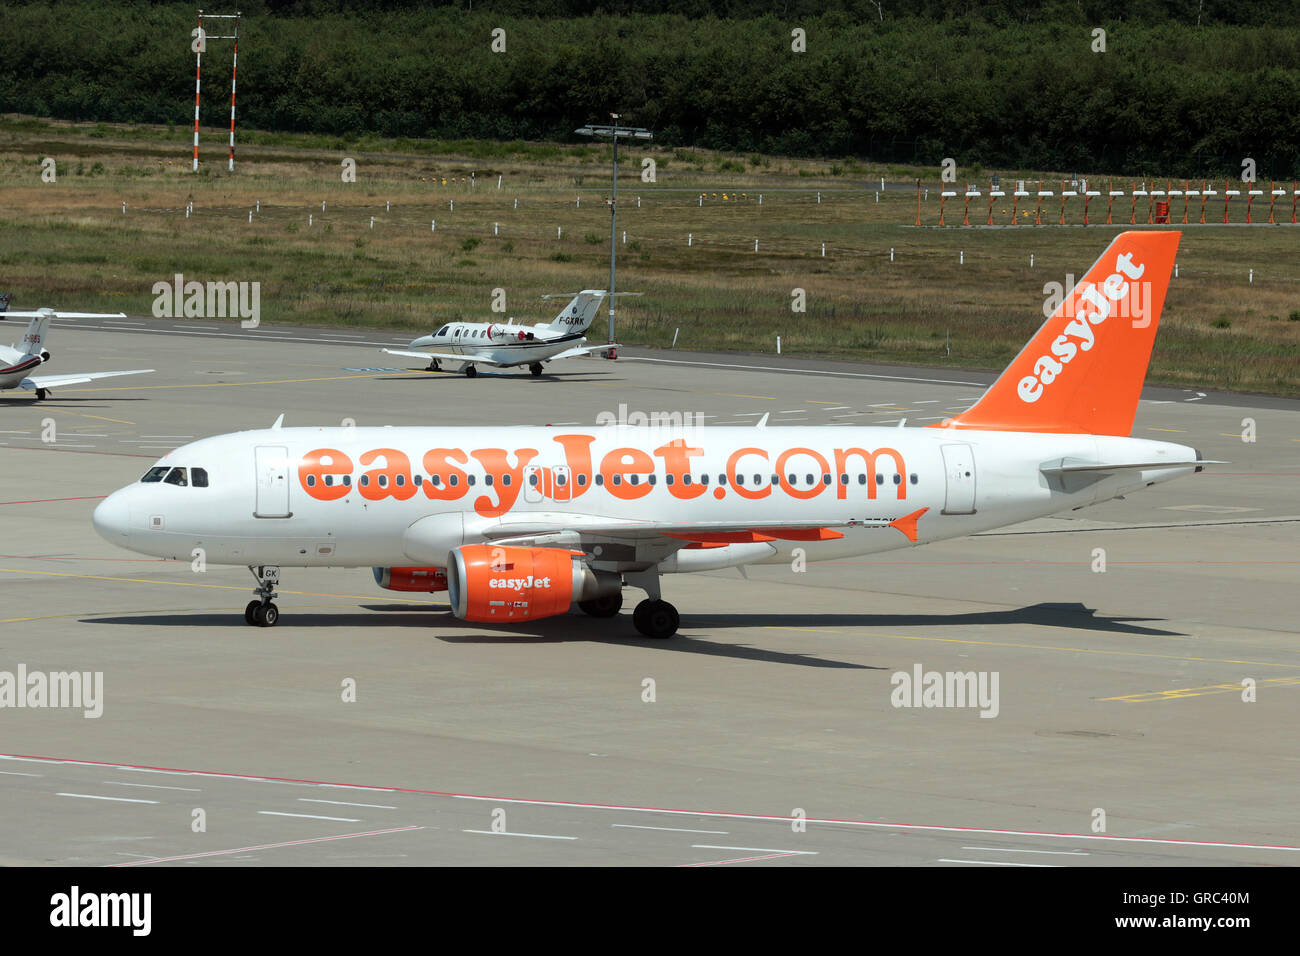 Airbus A319 d'Easyjet à l'enregistrement G-Ezgk Taxxing à la porte à l'aéroport de Cologne Banque D'Images